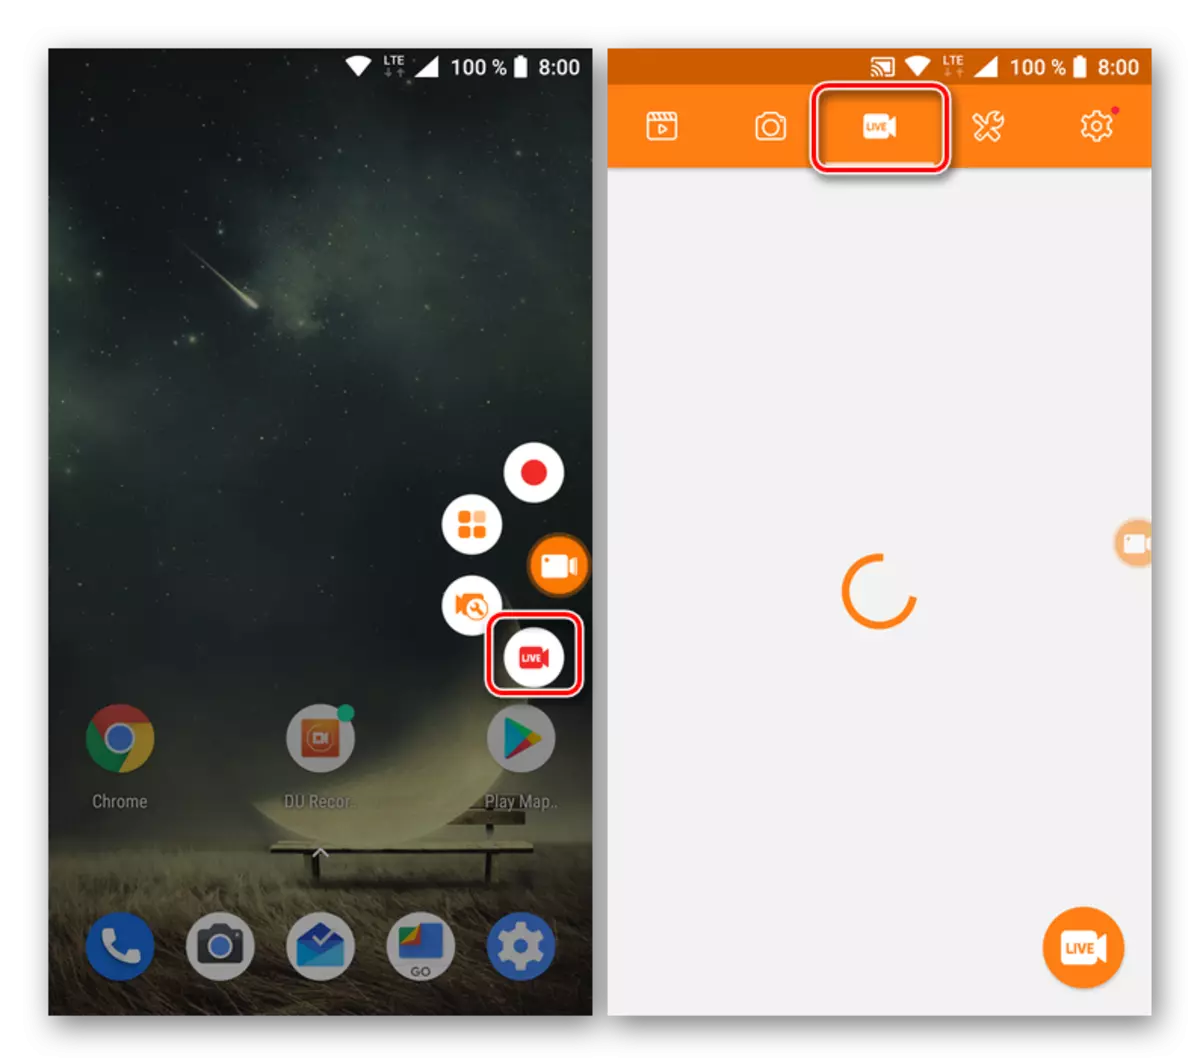 Android için du kaydedici uygulamasında oyun yayınları oluşturma ve görüntüleme